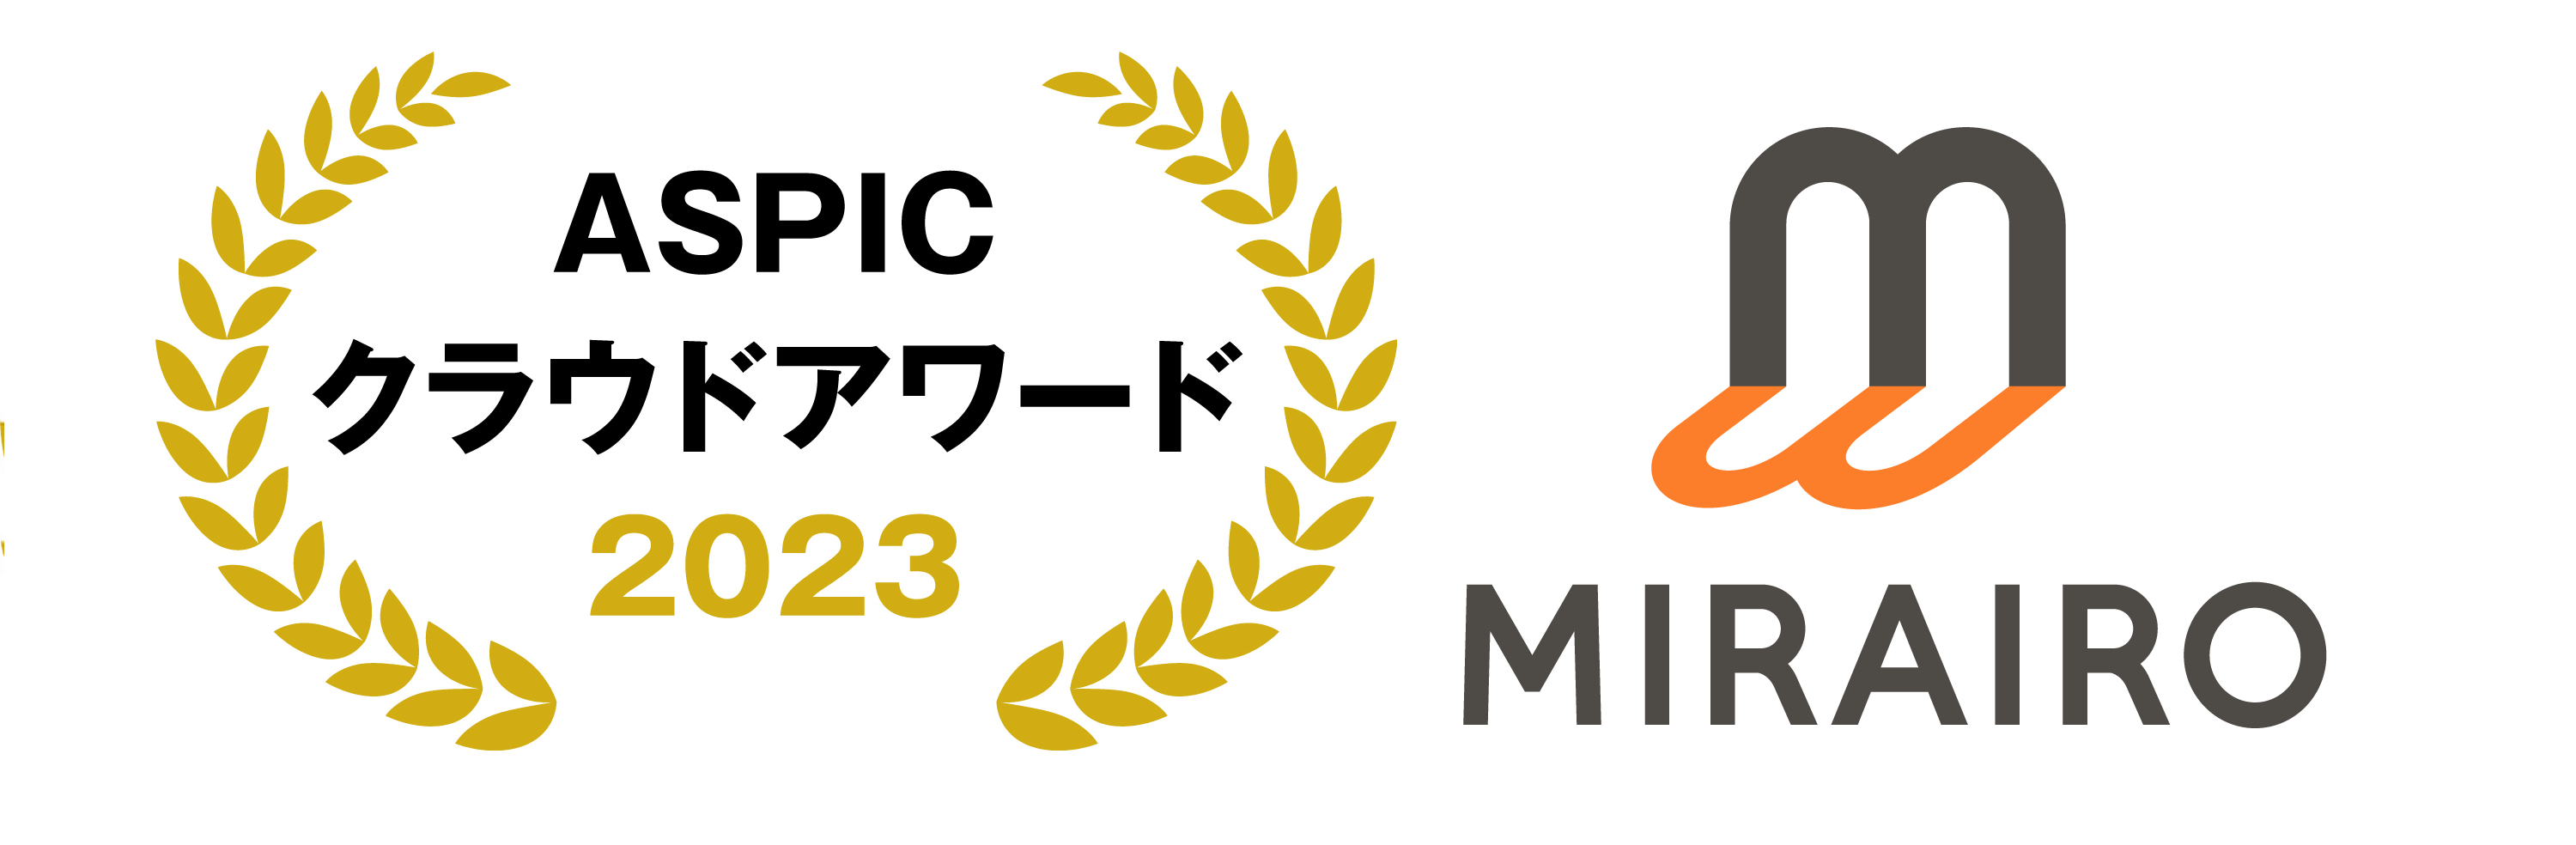 ASPICアワードのロゴとミライロのロゴ